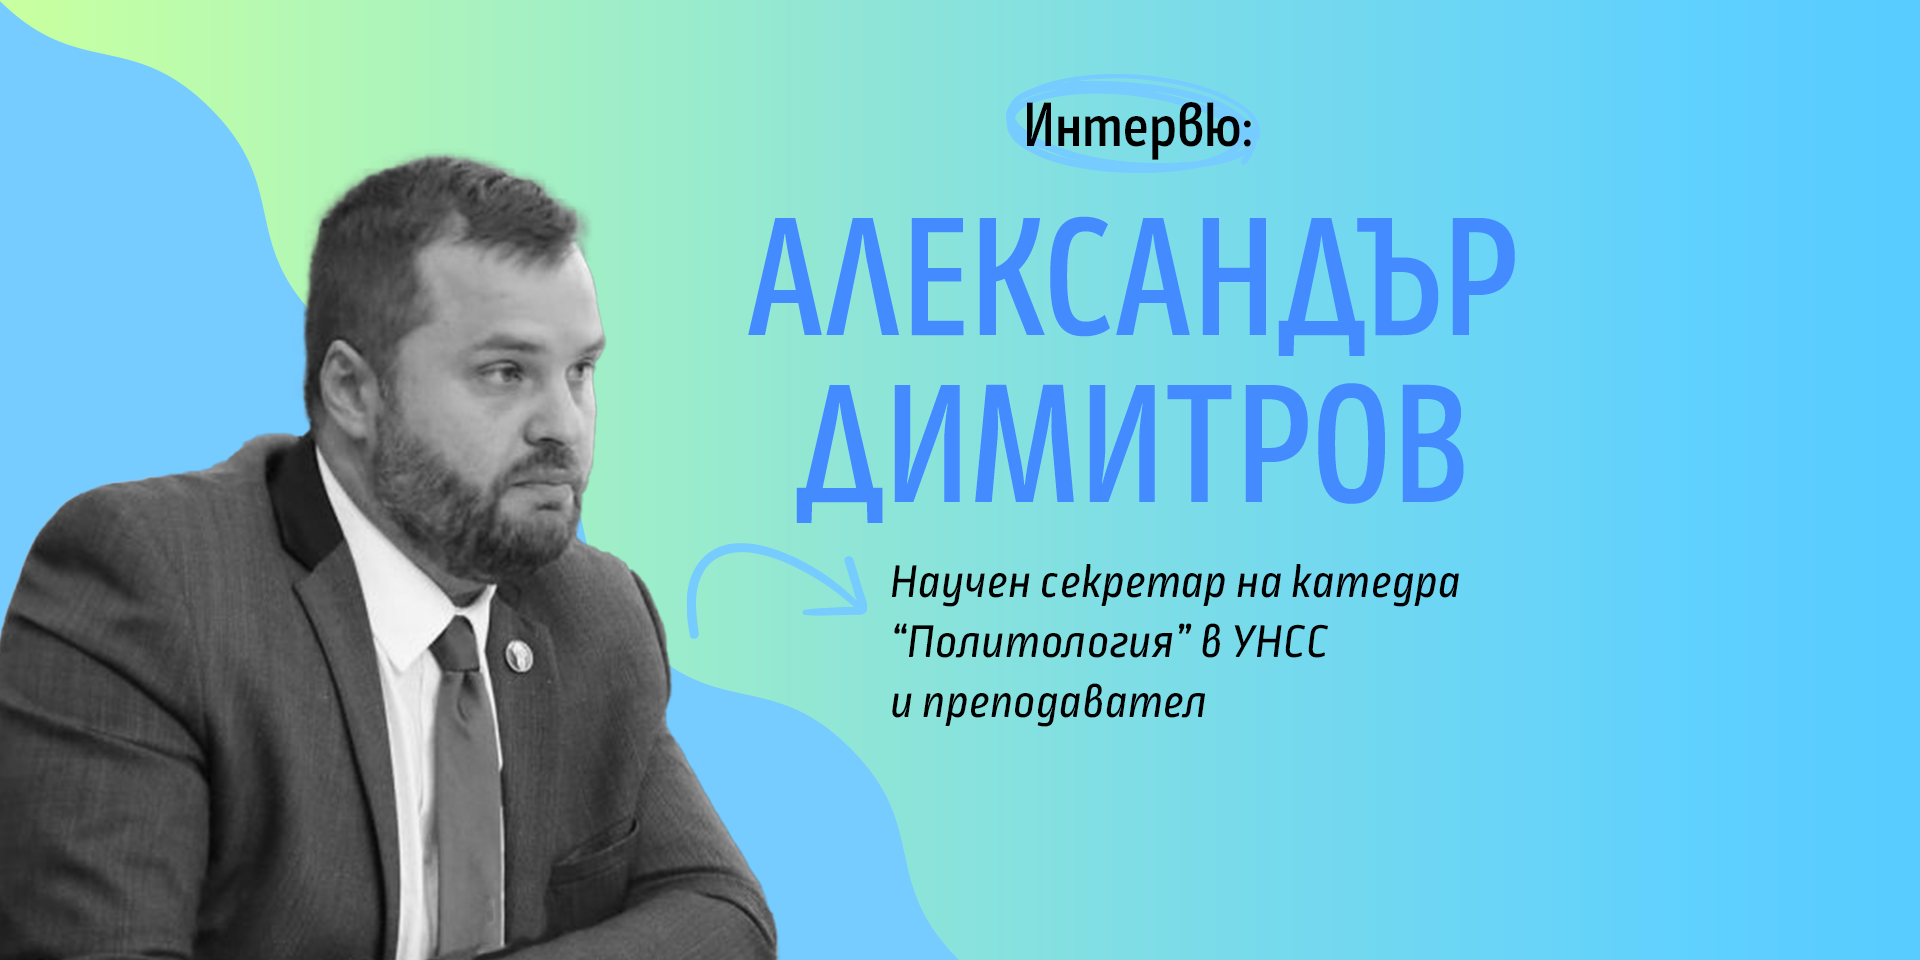 Гл. ас. Александър Димитров: Всеки осъзнат гражданин трябва да има познания и мнение за кмета на града, в който живее